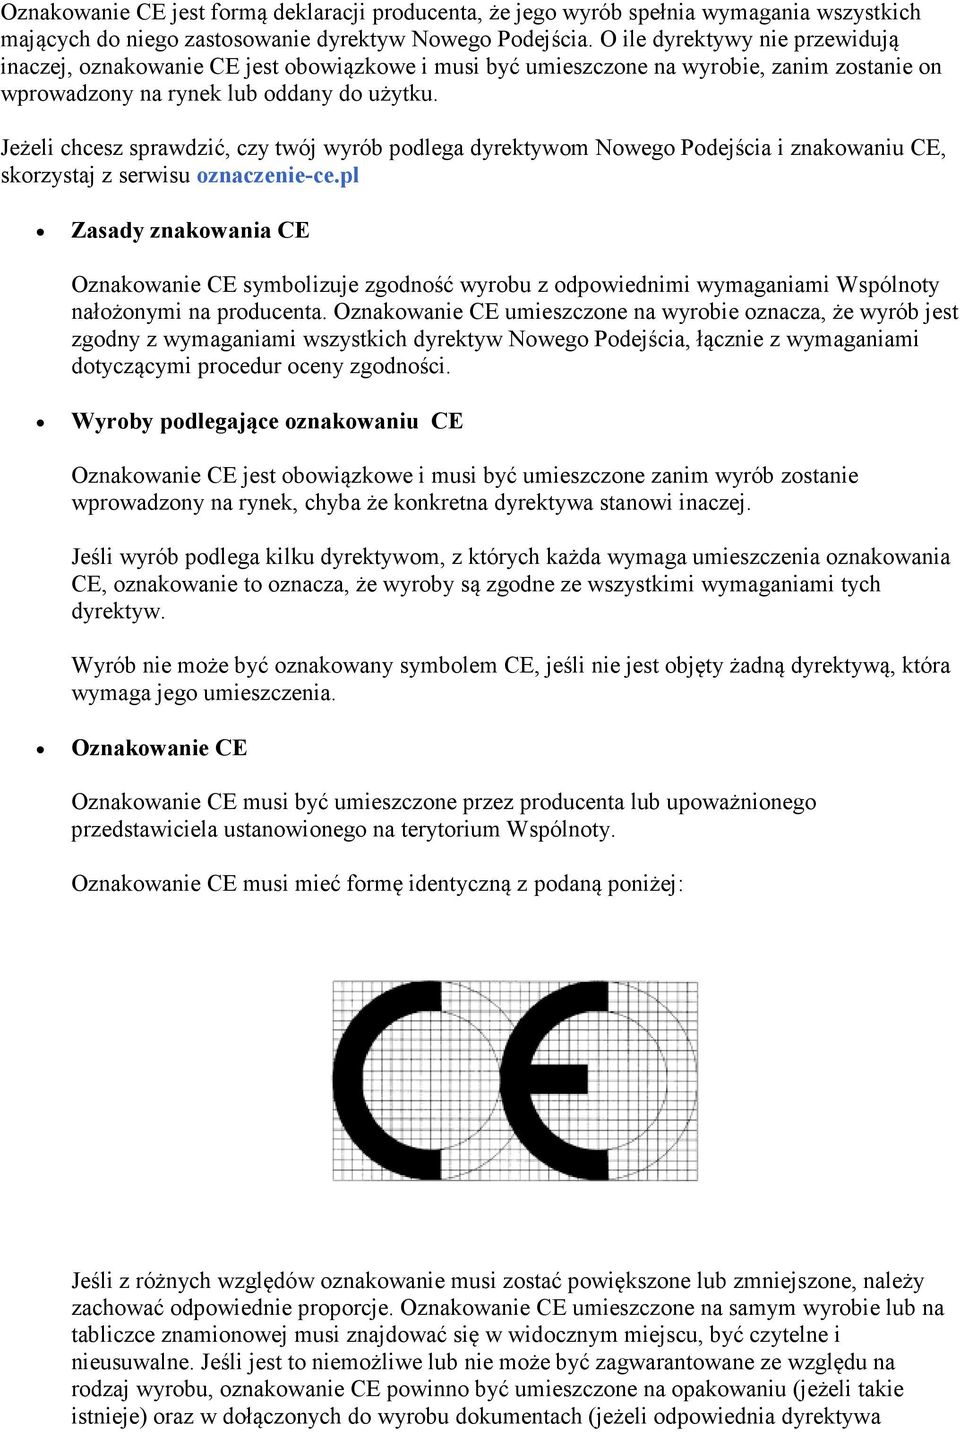 Jeżeli chcesz sprawdzić, czy twój wyrób podlega dyrektywom Nowego Podejścia i znakowaniu CE, skorzystaj z serwisu oznaczenie-ce.